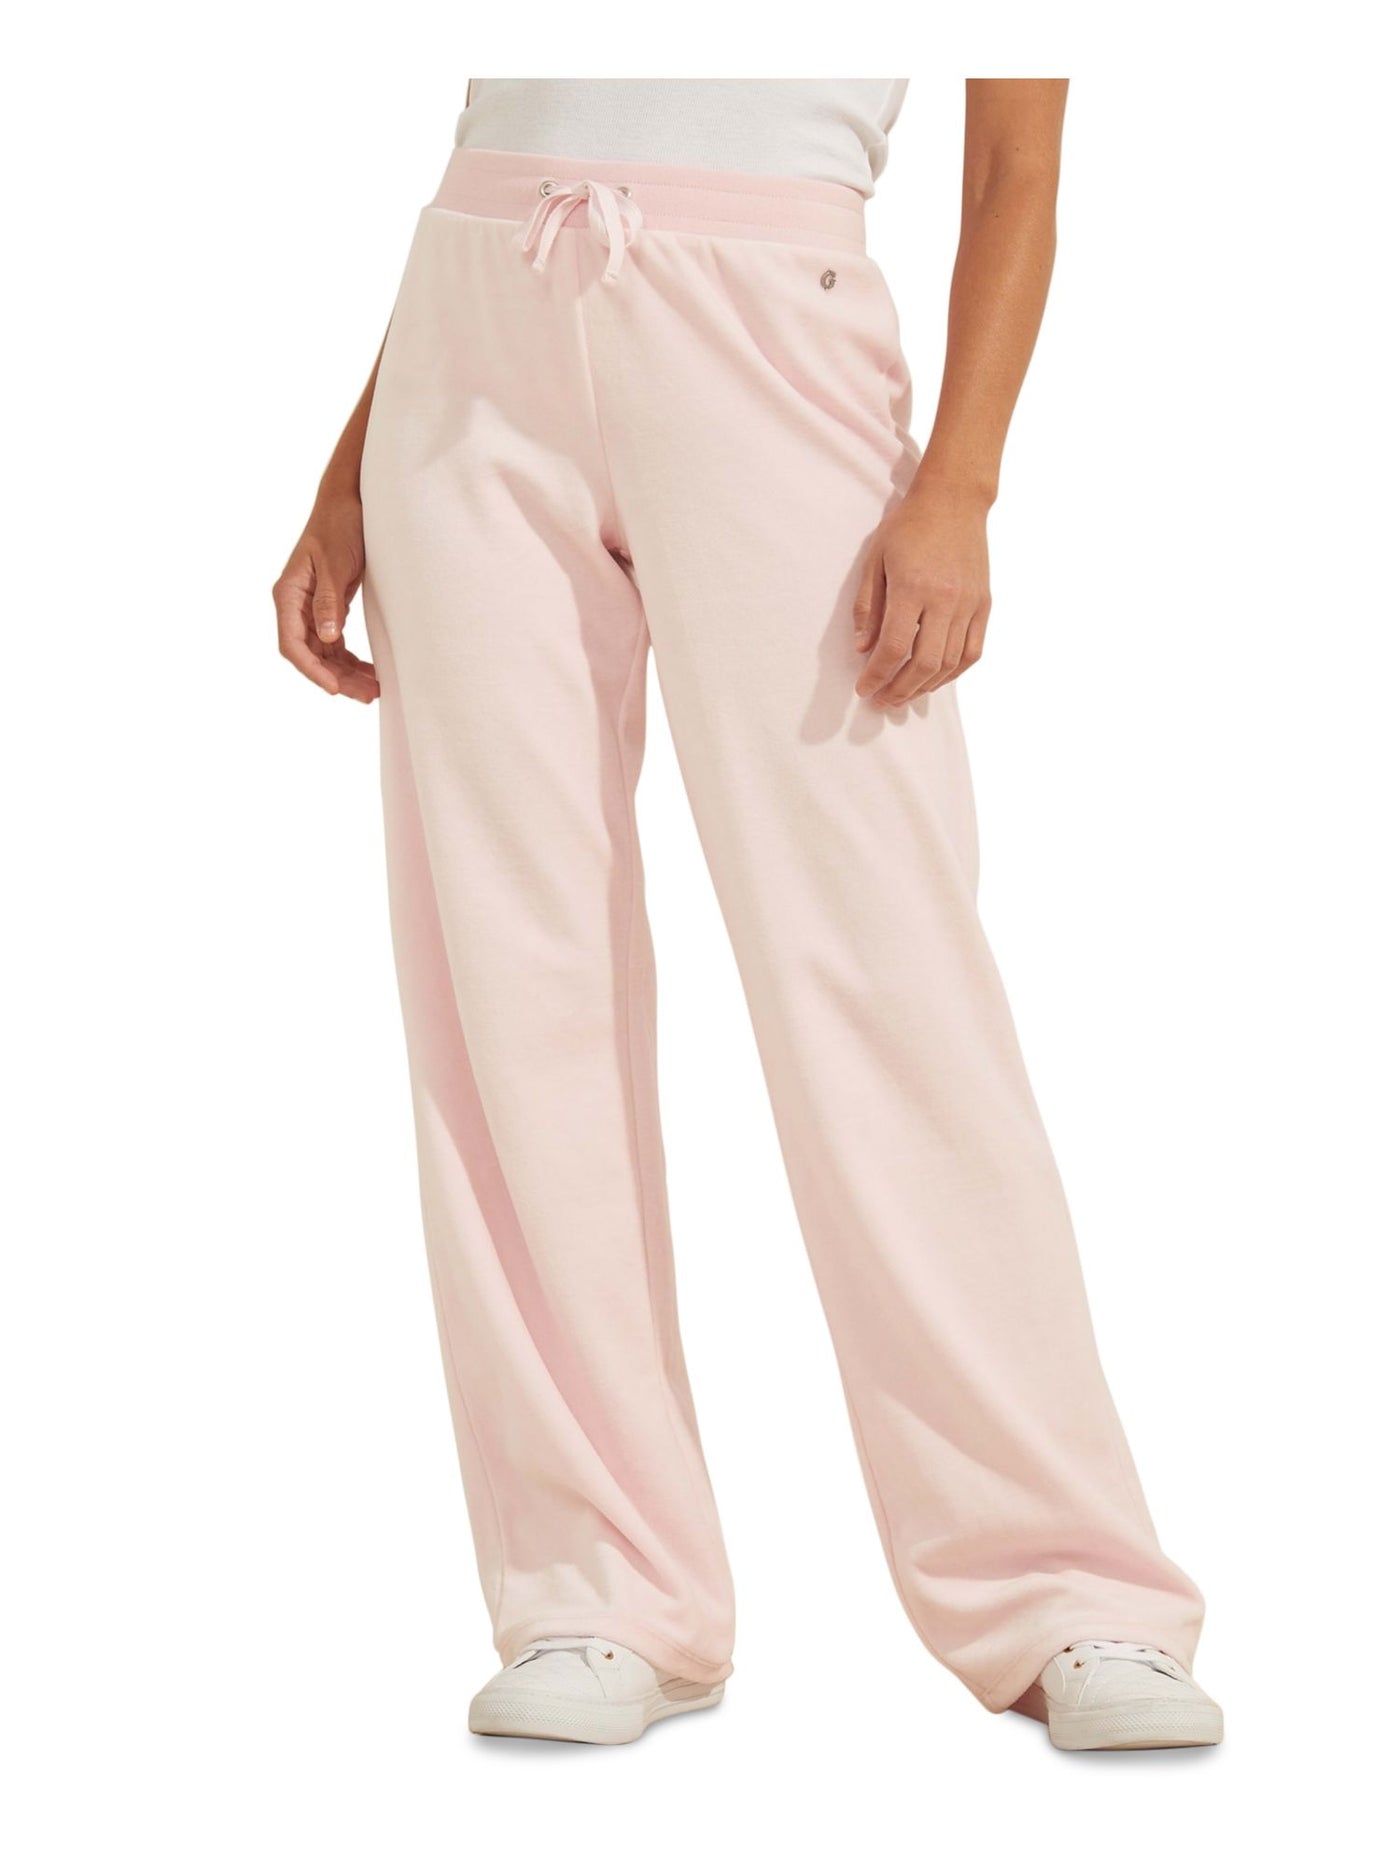 GUESS Womens Pink High Waist Pants XS